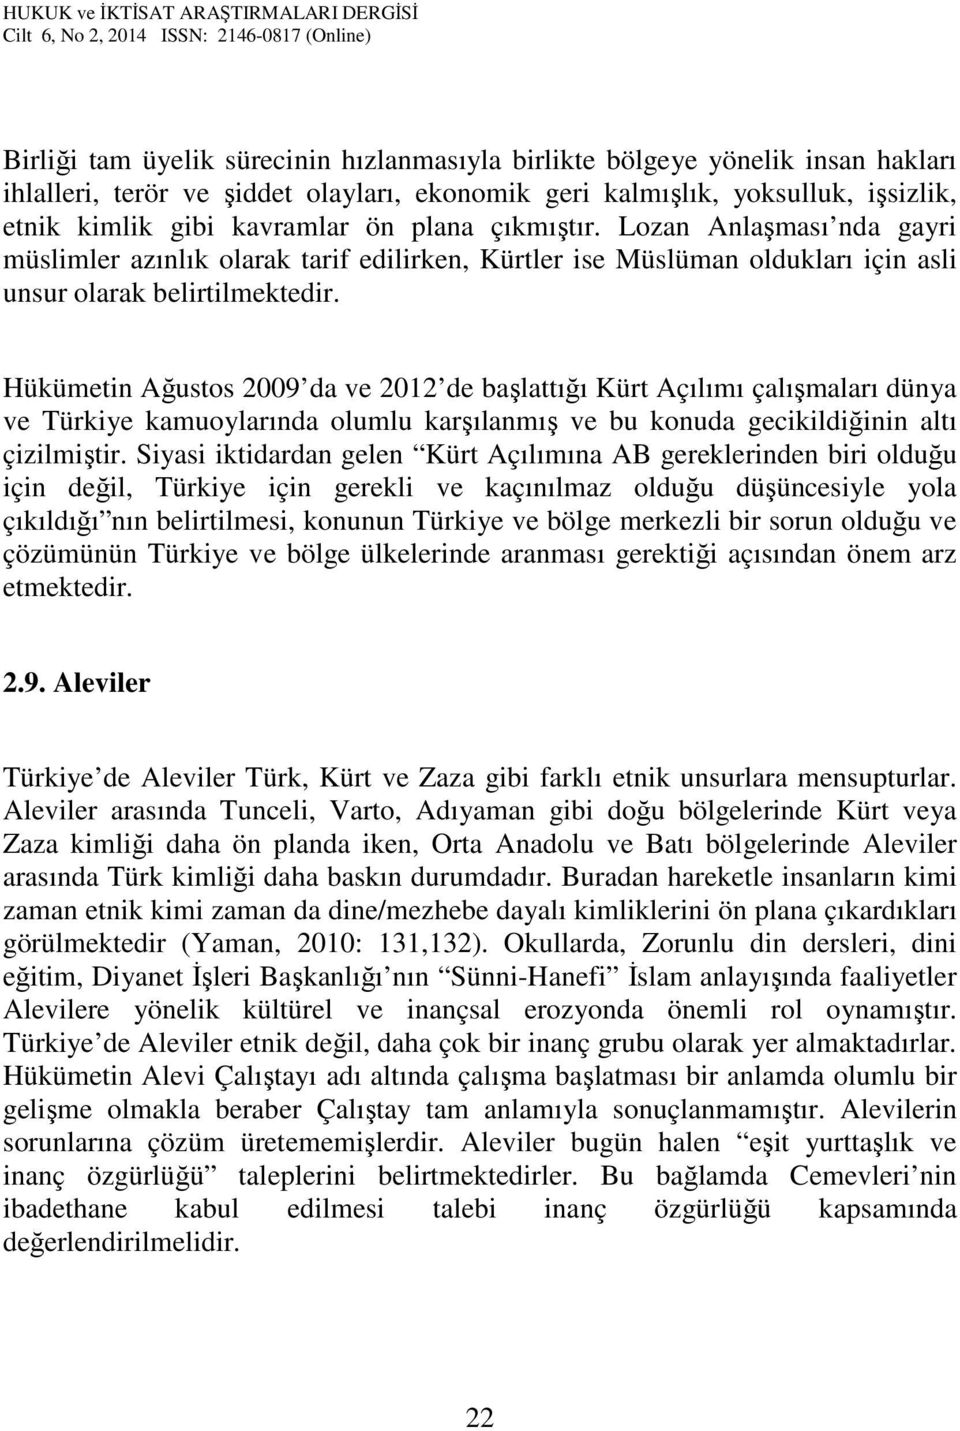 Hükümetin Ağustos 2009 da ve 2012 de başlattığı Kürt Açılımı çalışmaları dünya ve Türkiye kamuoylarında olumlu karşılanmış ve bu konuda gecikildiğinin altı çizilmiştir.